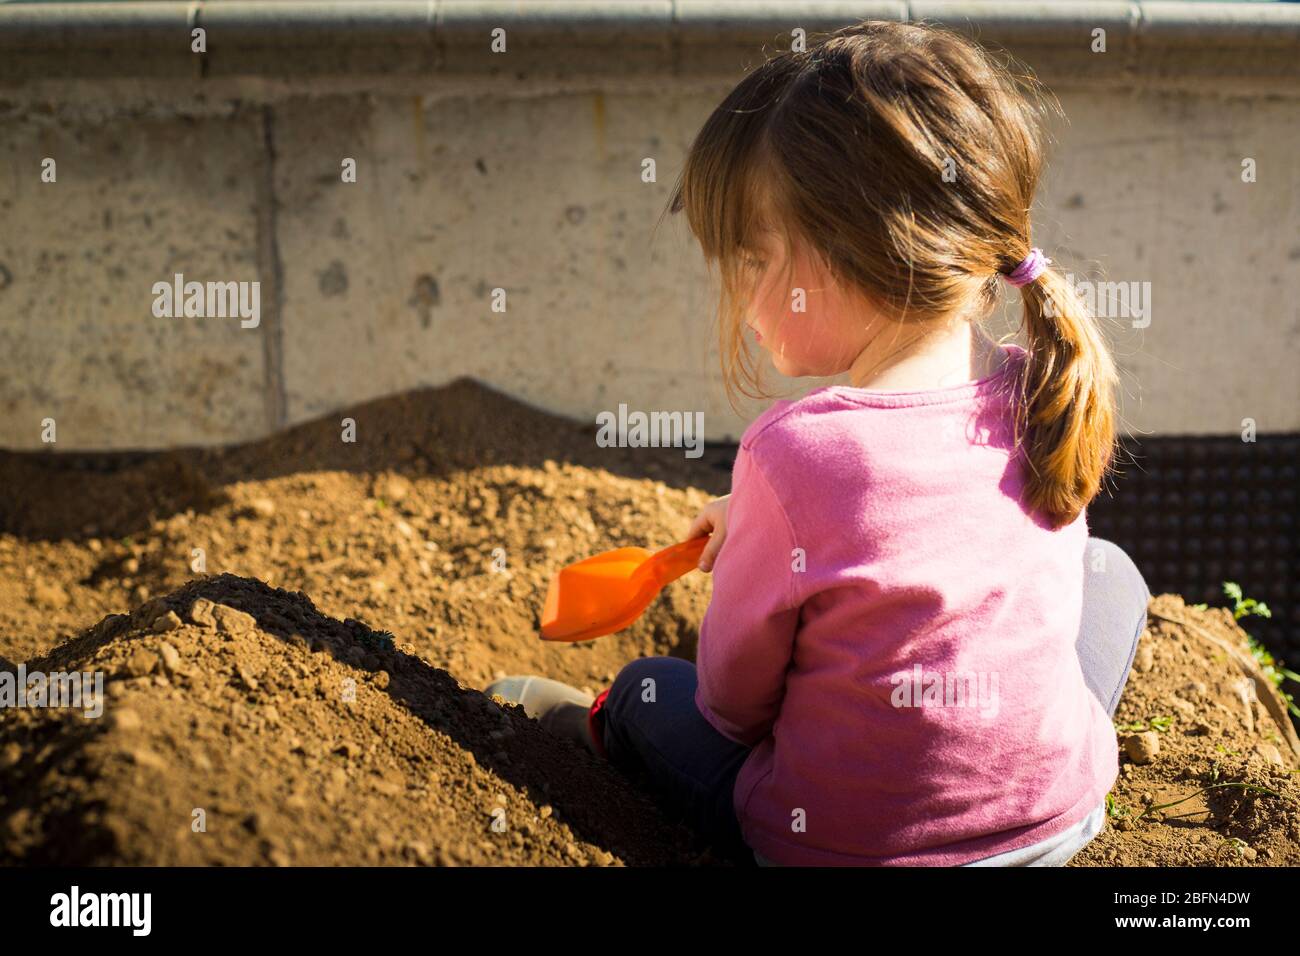 Kleines Mädchen, das während der Blockade der COVID-19-Pandemie mit einer Schaufel im Garten Erde gräbt. Outdoor-Aktivität Idee für Kinder während des Aufenthalts zu Hause. Stockfoto